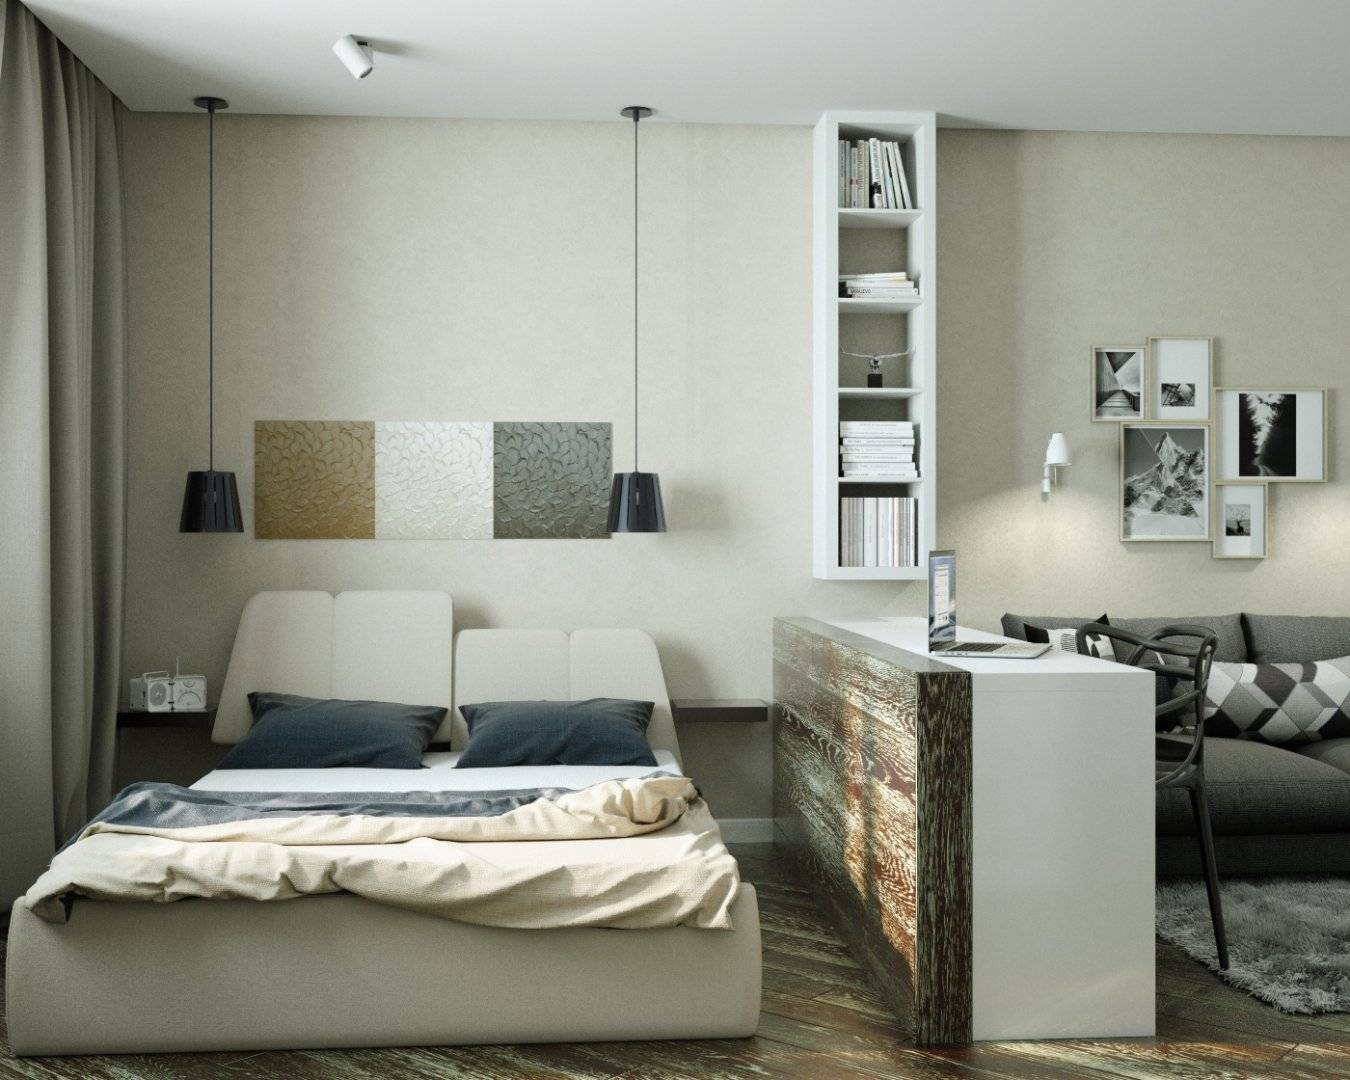 Кровать в однокомнатной квартире: 10 вариантов размещения и способов зонирования